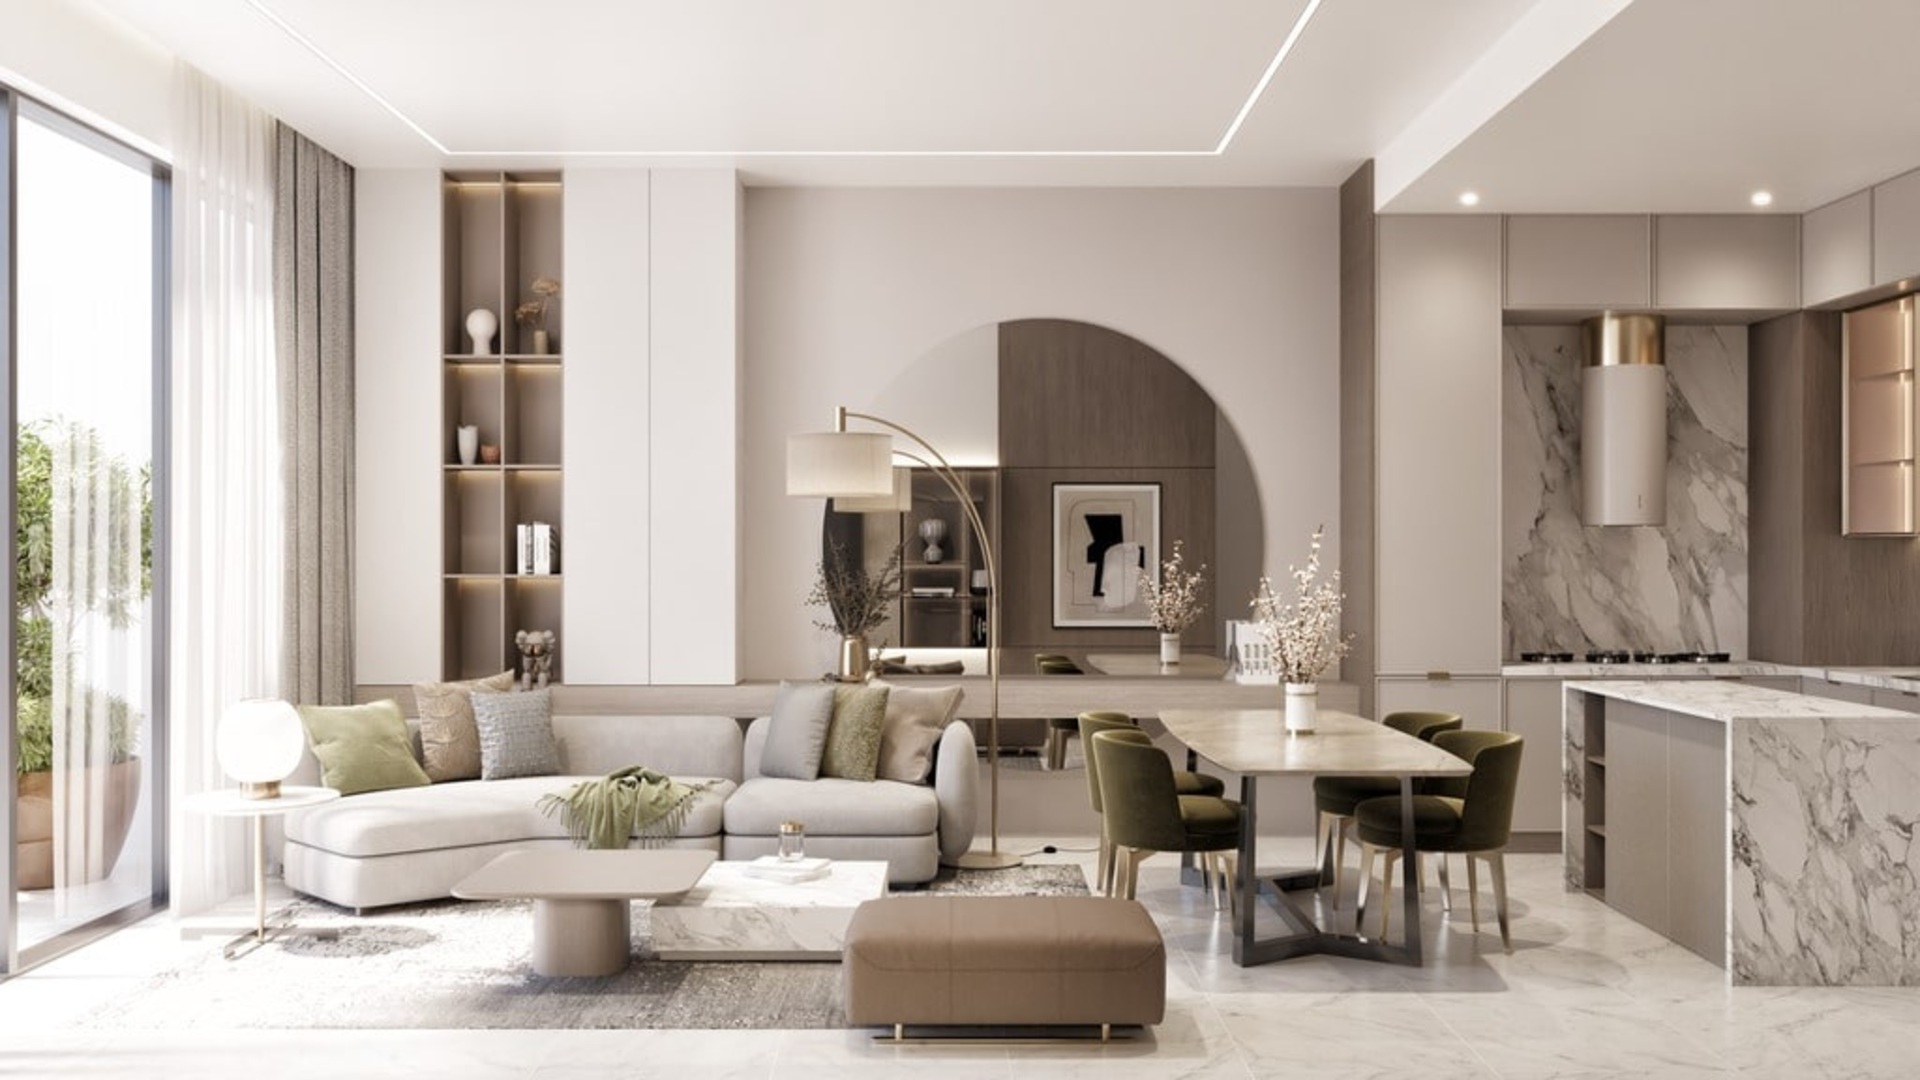 Samana Skyros Residences - moderní apartmány v Arjanu